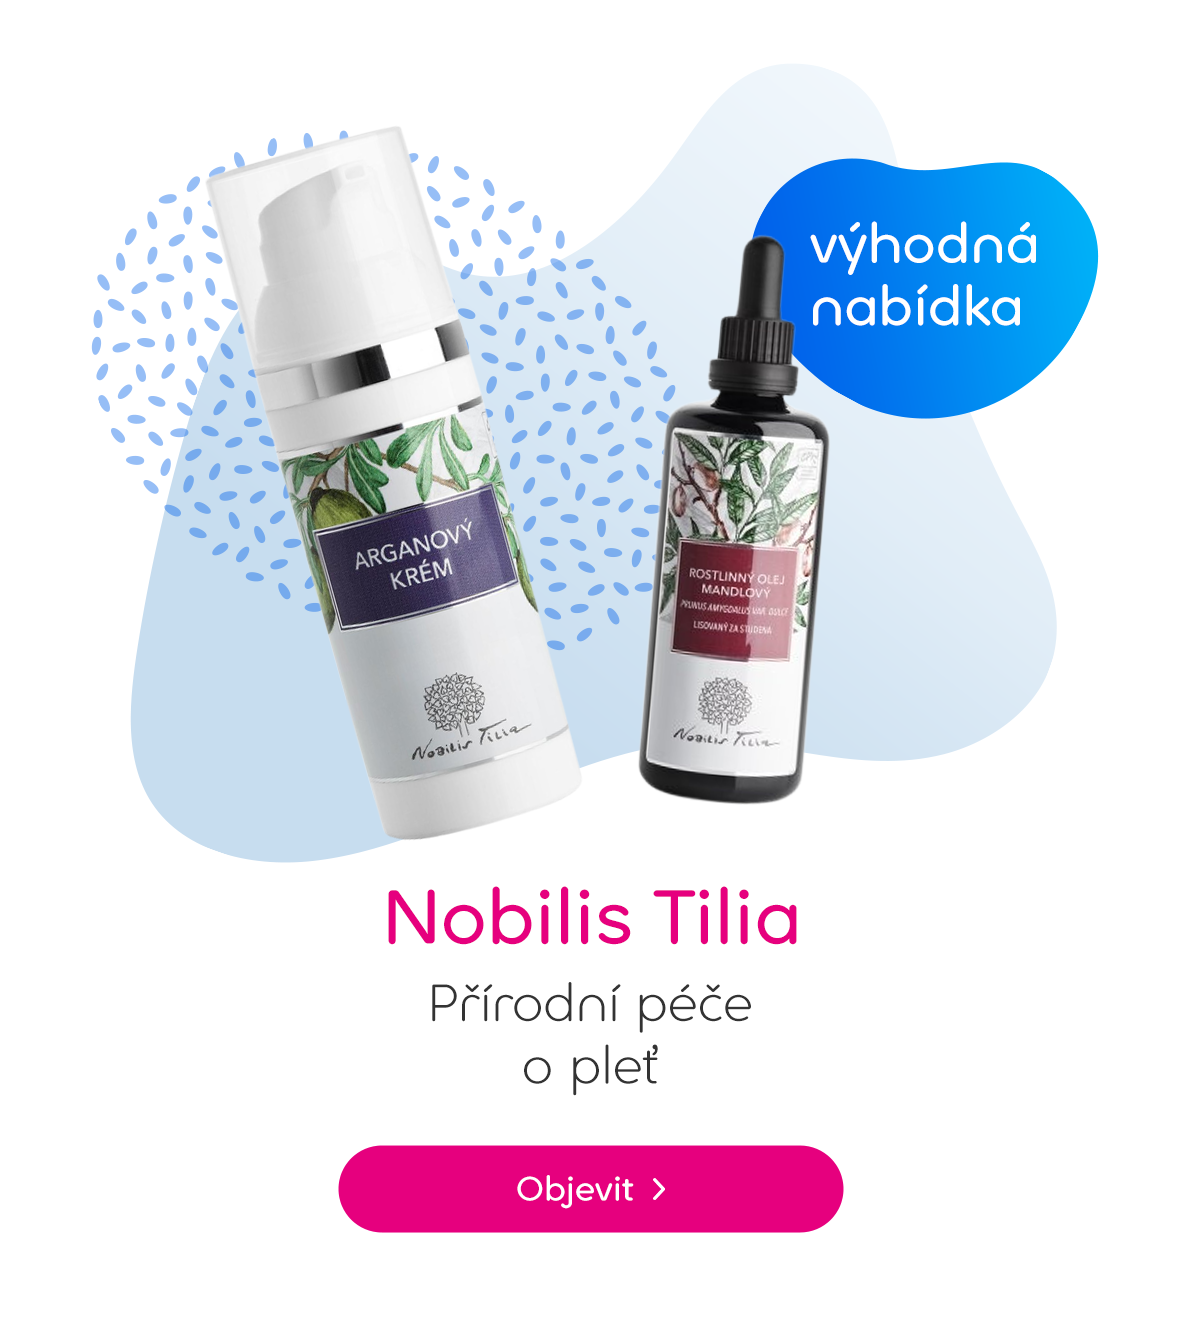 Nobilis Tilia